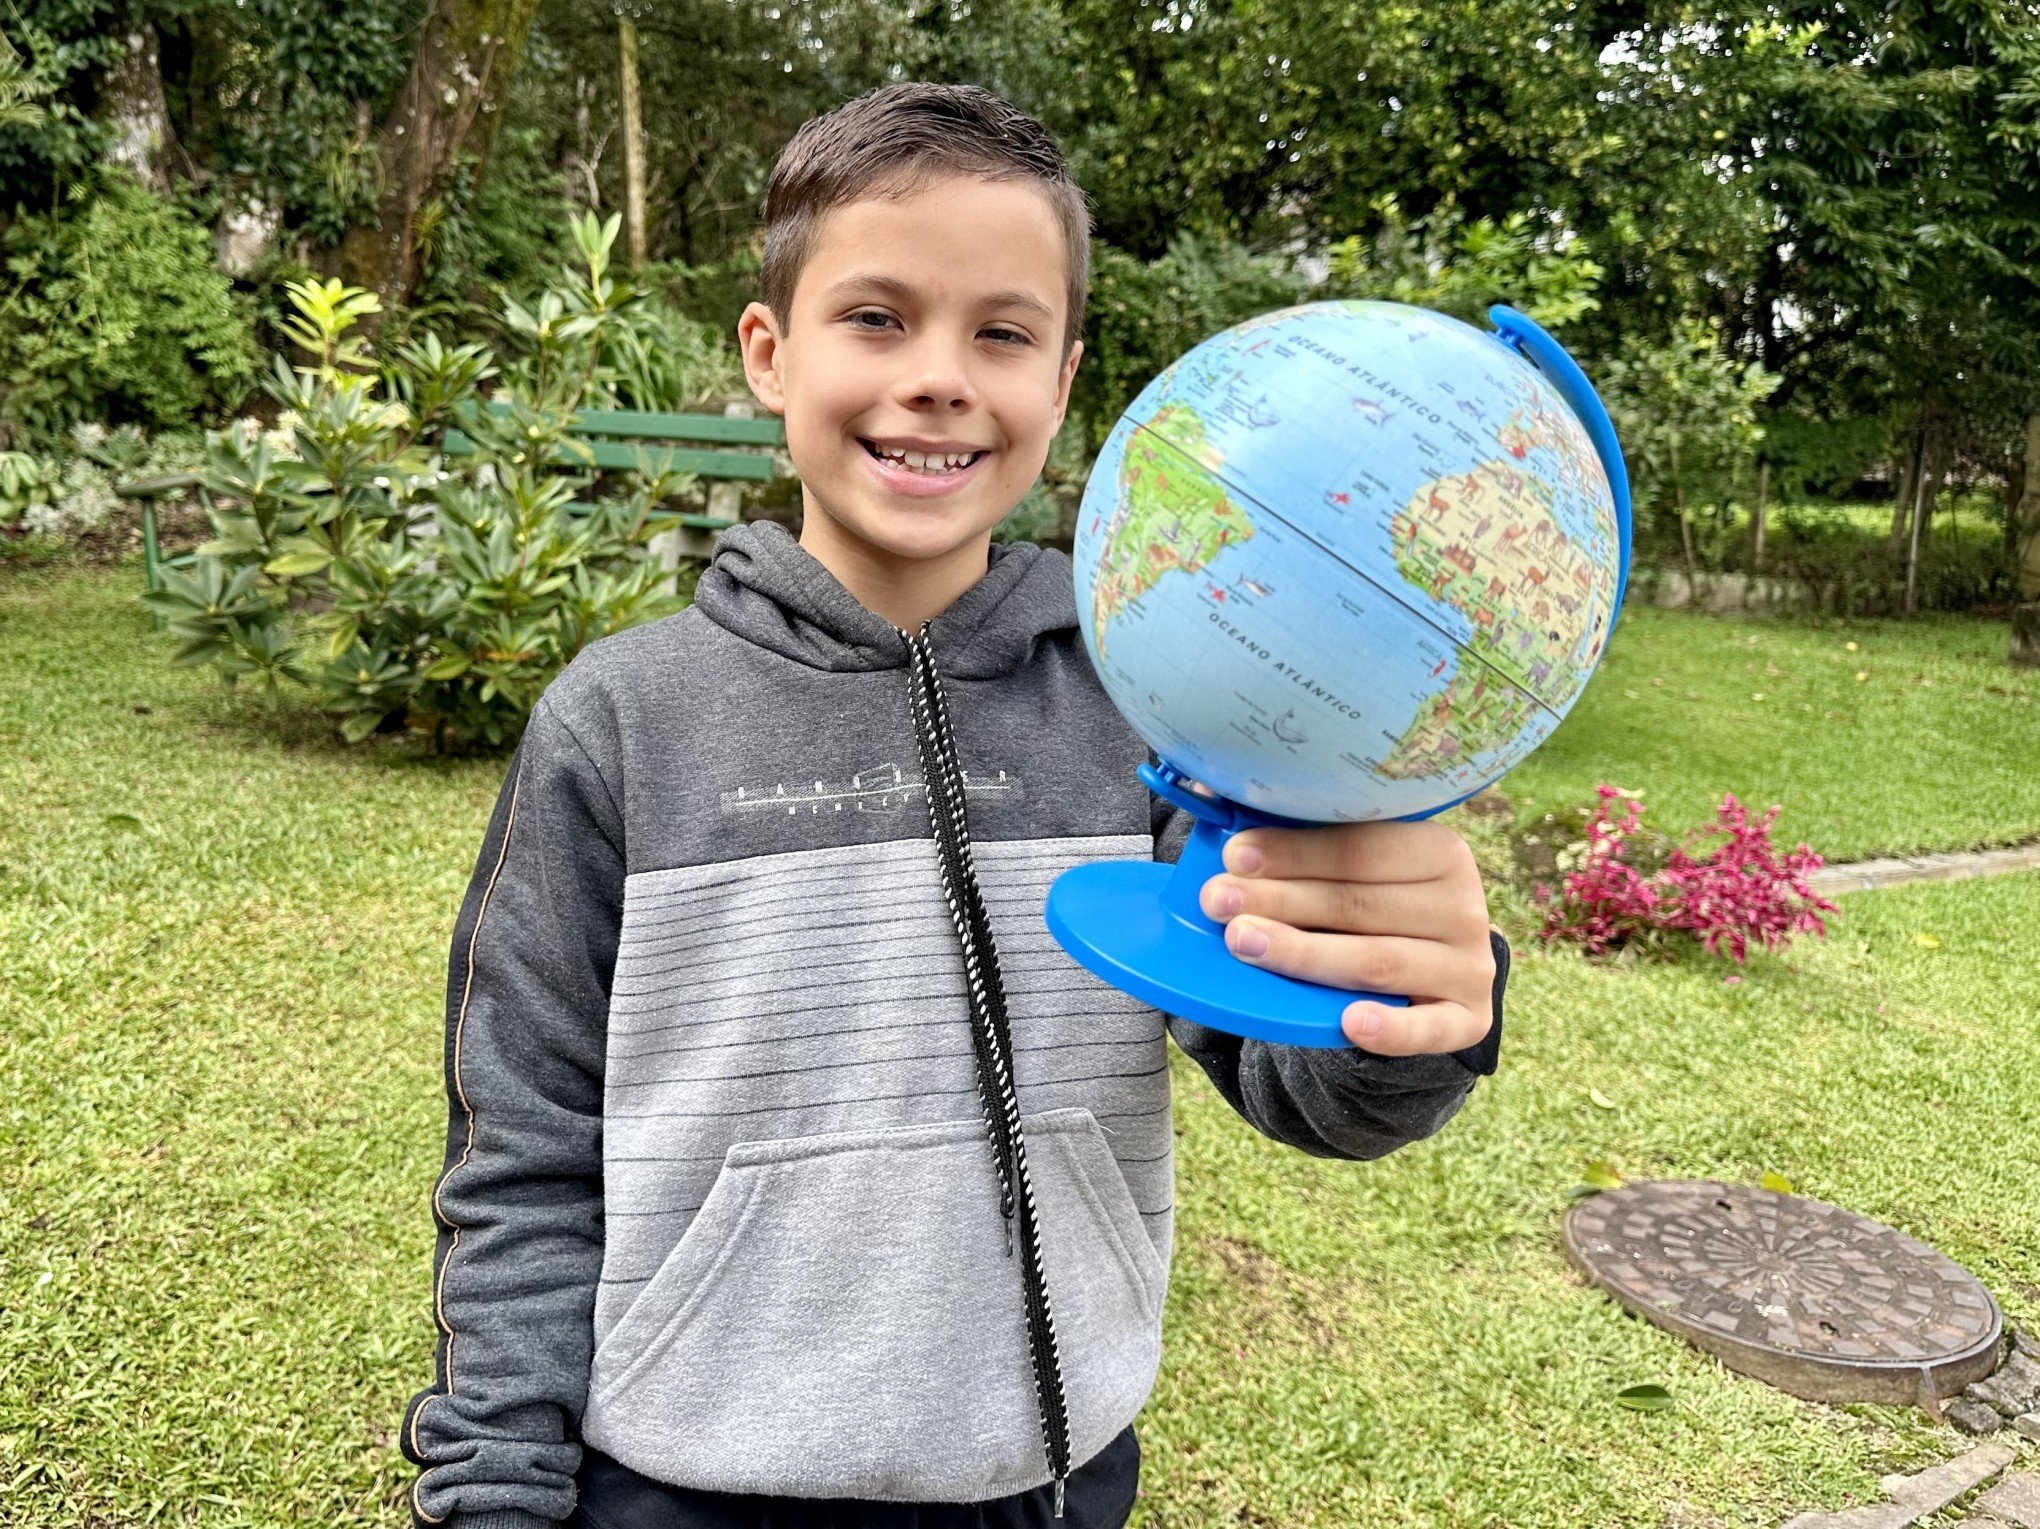 SUPERDOTADO: Gaúcho de 10 anos conclui o ensino fundamental e integra lista dos superinteligentes do Brasil